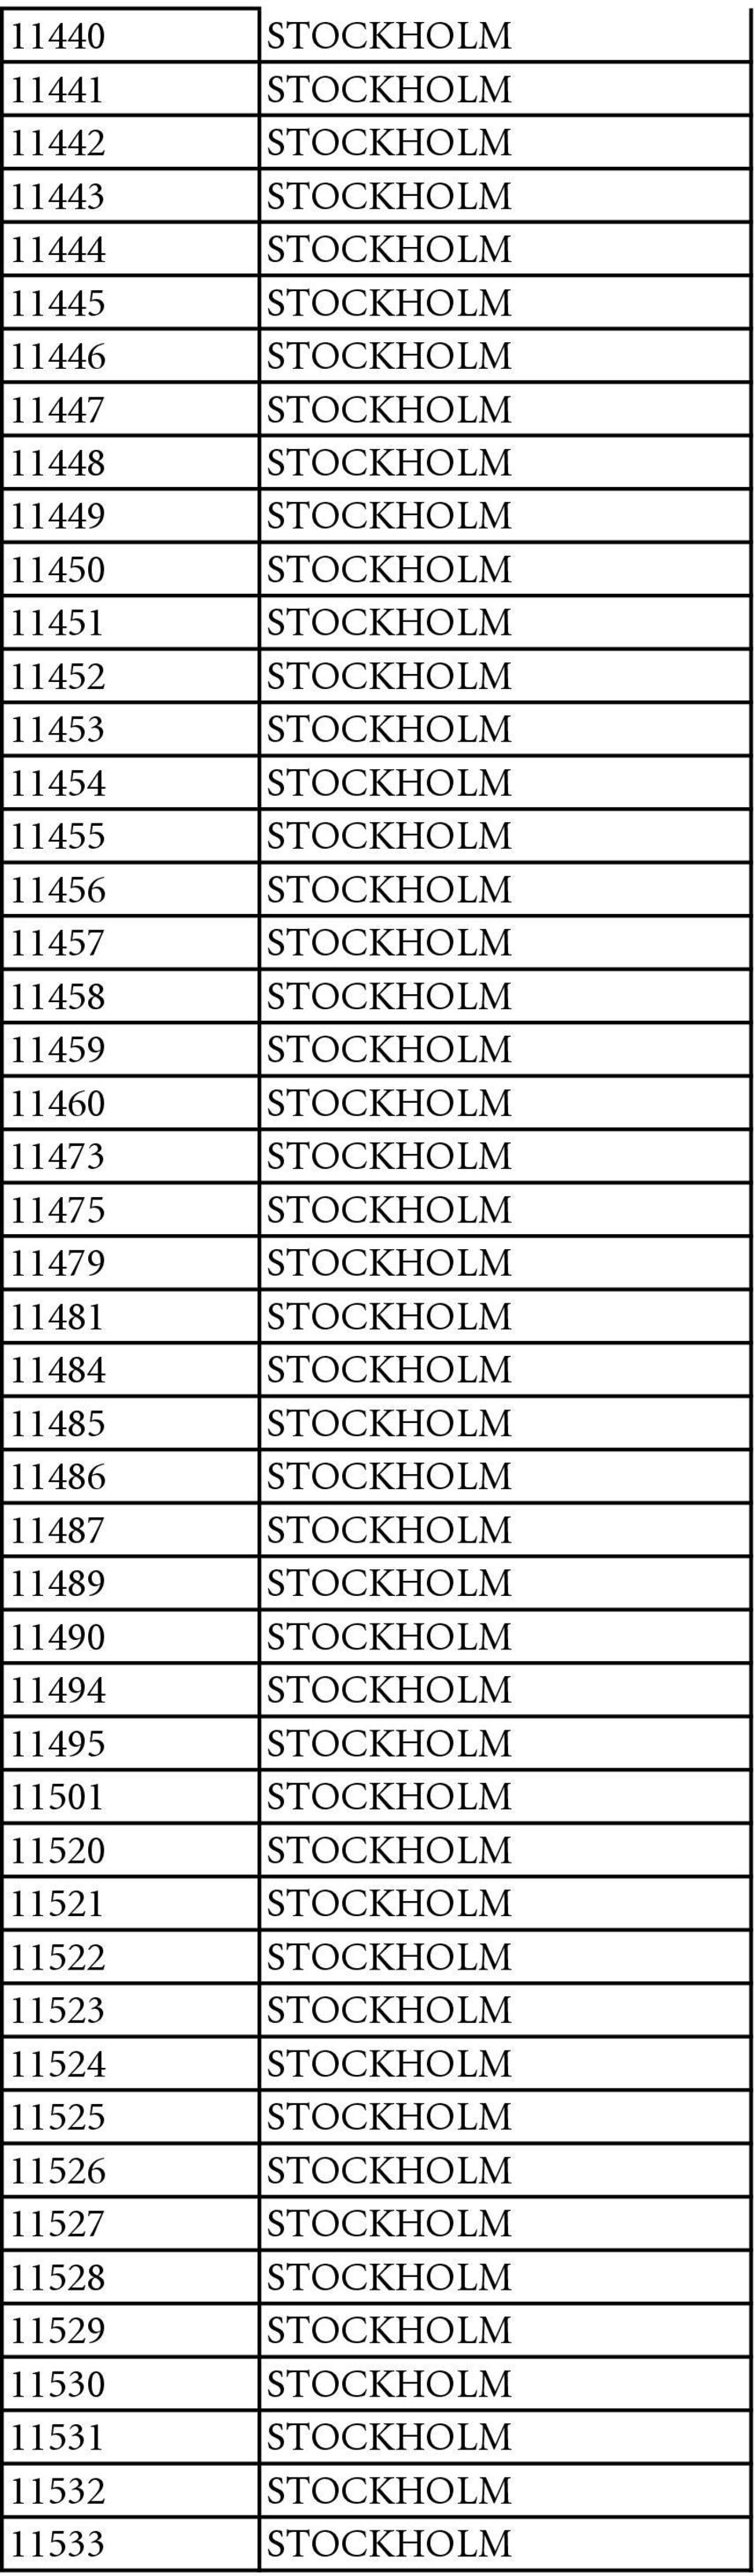 11481 STOCKHOLM 11484 STOCKHOLM 11485 STOCKHOLM 11486 STOCKHOLM 11487 STOCKHOLM 11489 STOCKHOLM 11490 STOCKHOLM 11494 STOCKHOLM 11495 STOCKHOLM 11501 STOCKHOLM 11520 STOCKHOLM 11521 STOCKHOLM